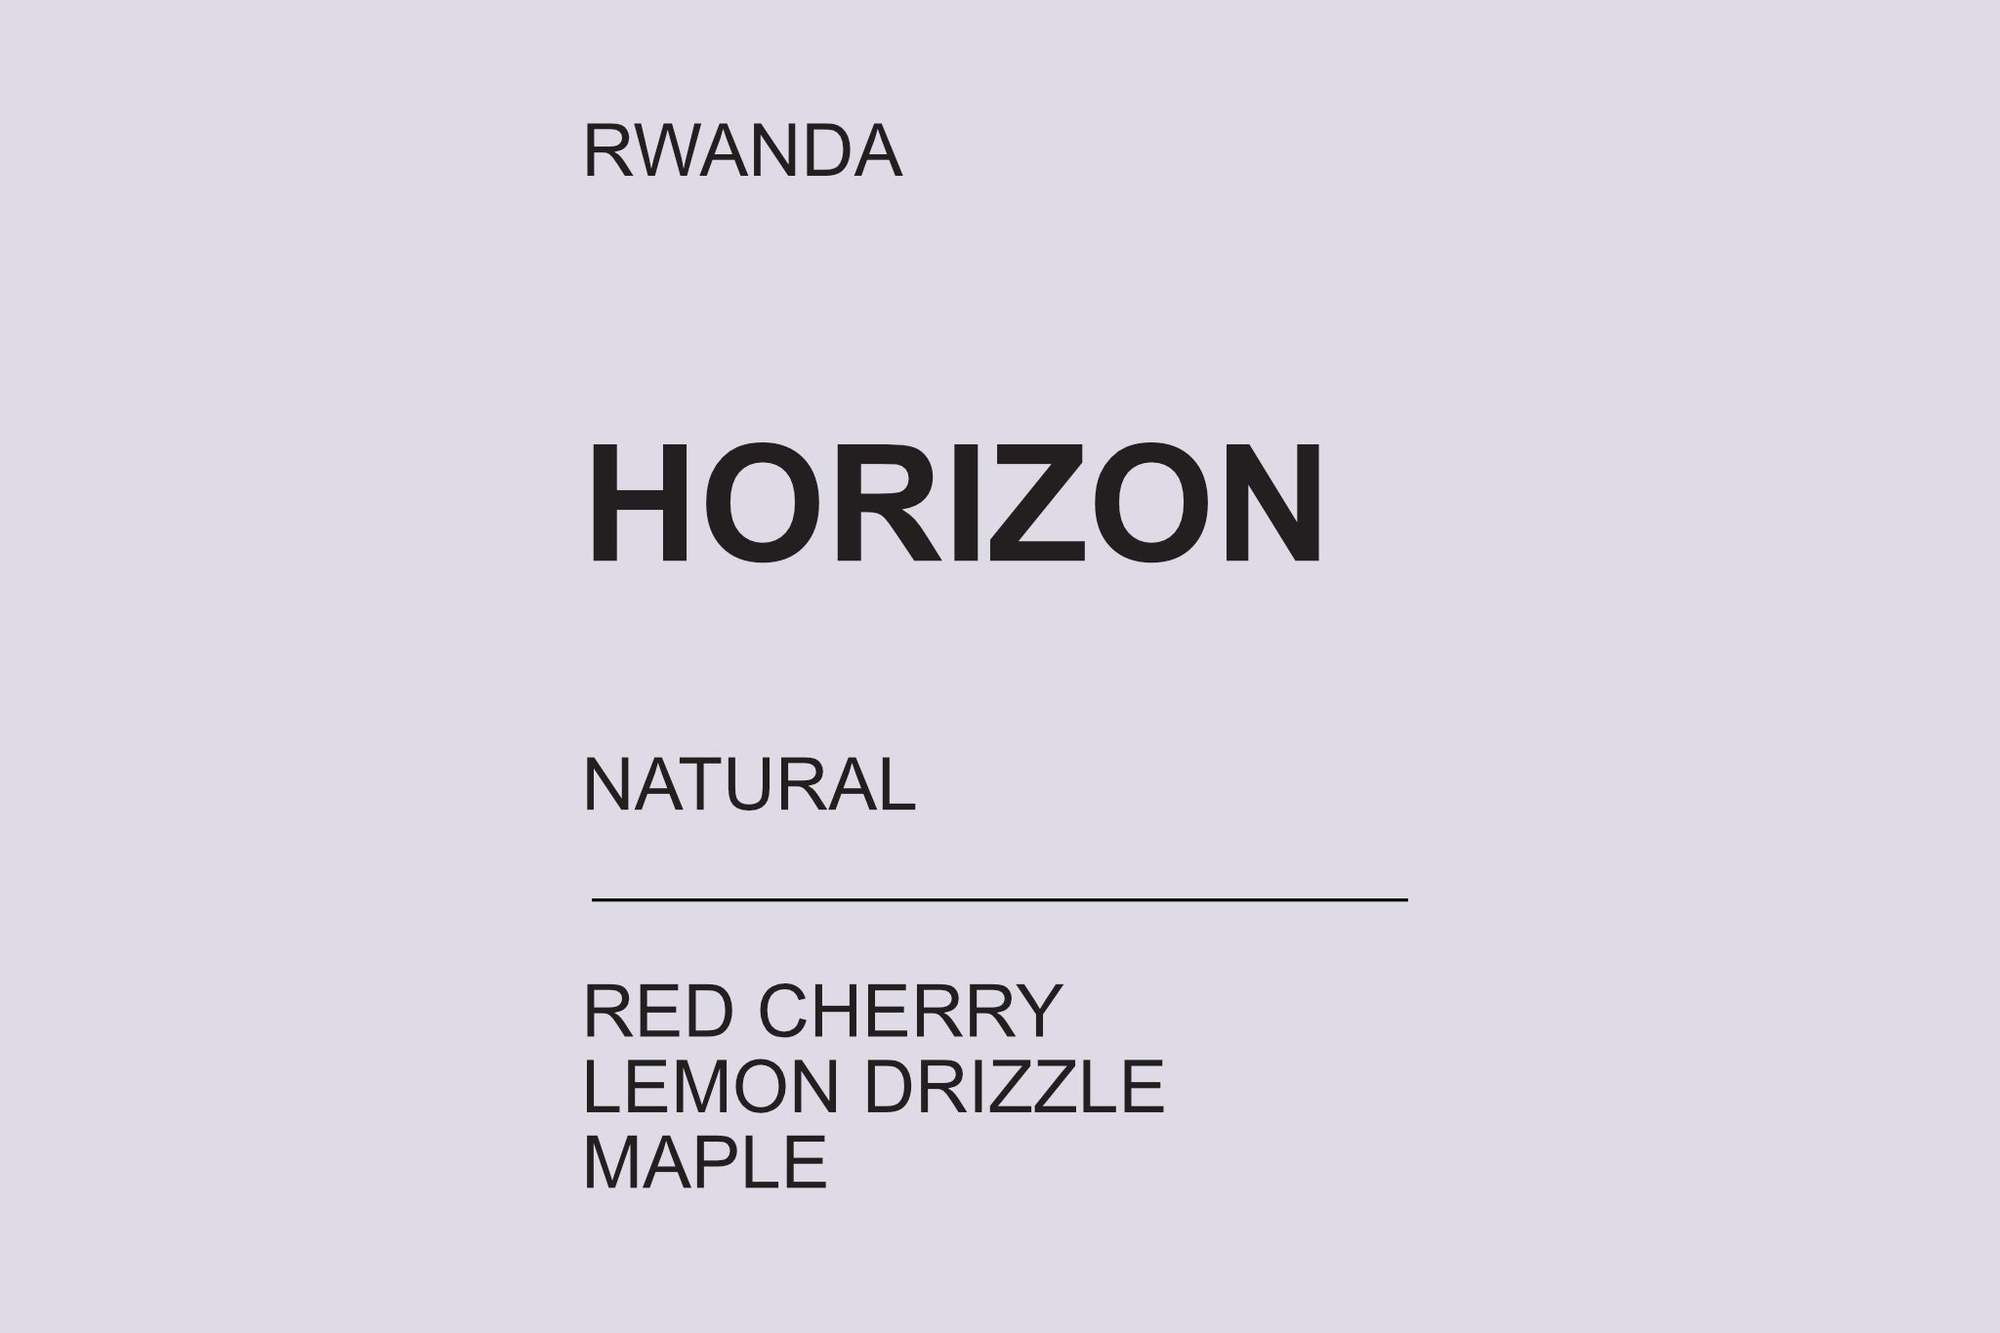 Horizon - Rwanda